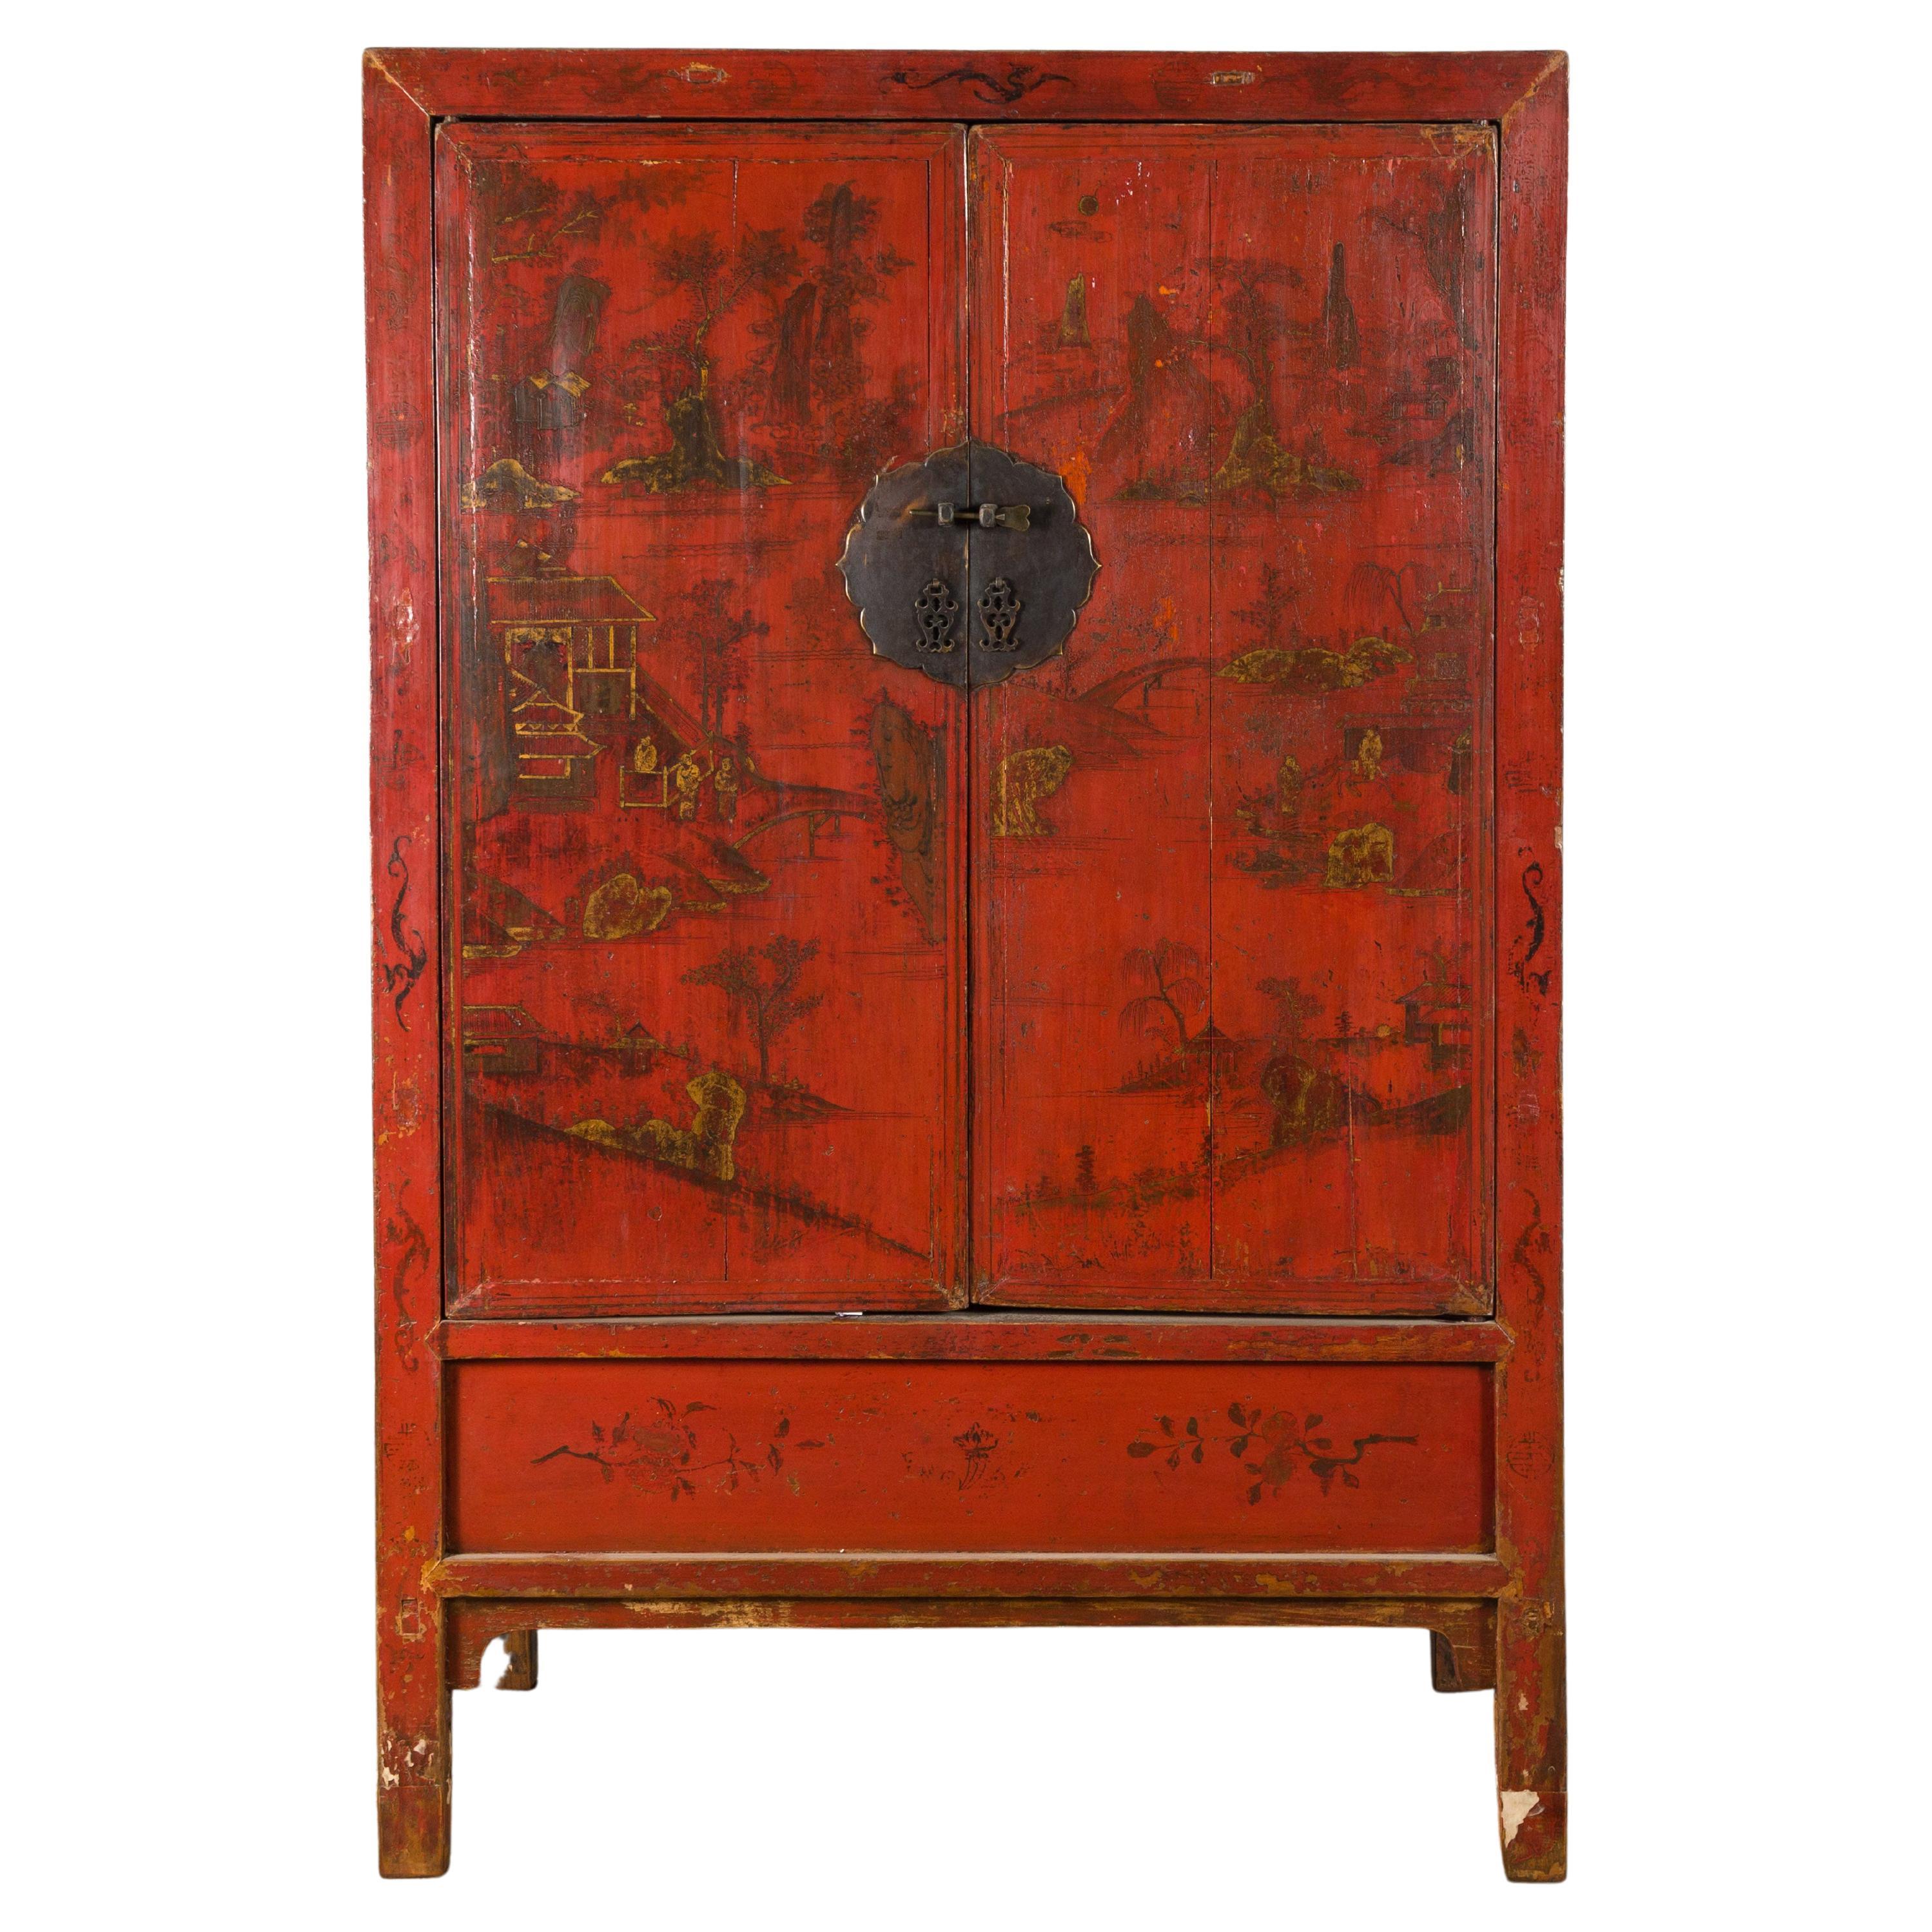 Cabinet d'époque de la dynastie chinoise Qing, datant du XIXe siècle, avec laque rouge d'origine et décor doré peint à la main. Créé en Chine à l'époque de la dynastie Qing au XIXe siècle, ce meuble présente sa laque rouge d'origine, un fond parfait